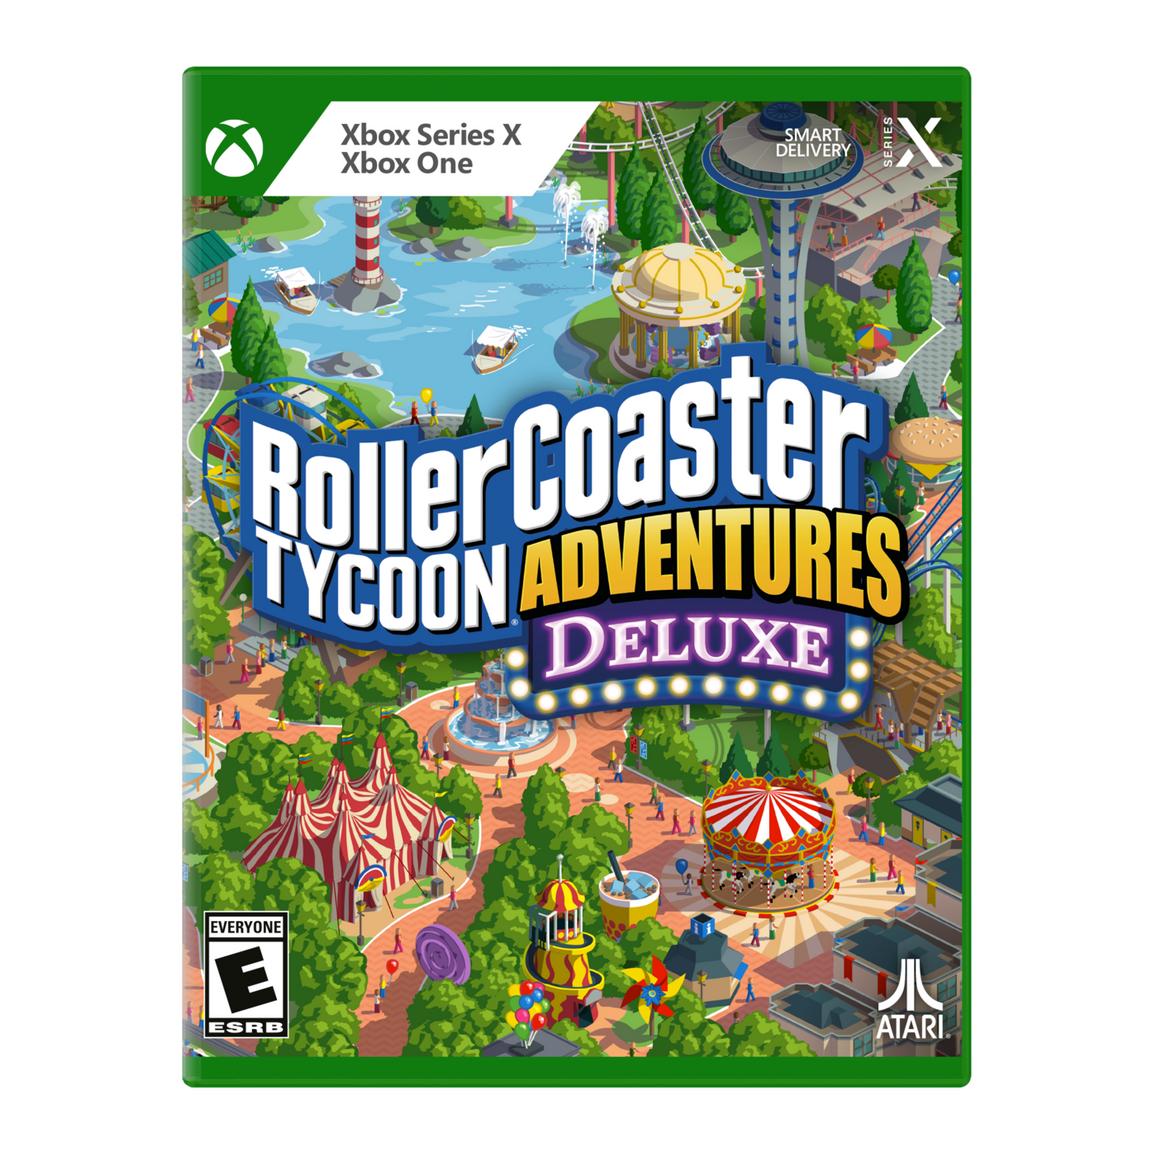 Видеоигра RollerCoaster Tycoon Adventures Deluxe - Xbox Series X, Xbox One карты theory11 green tycoon